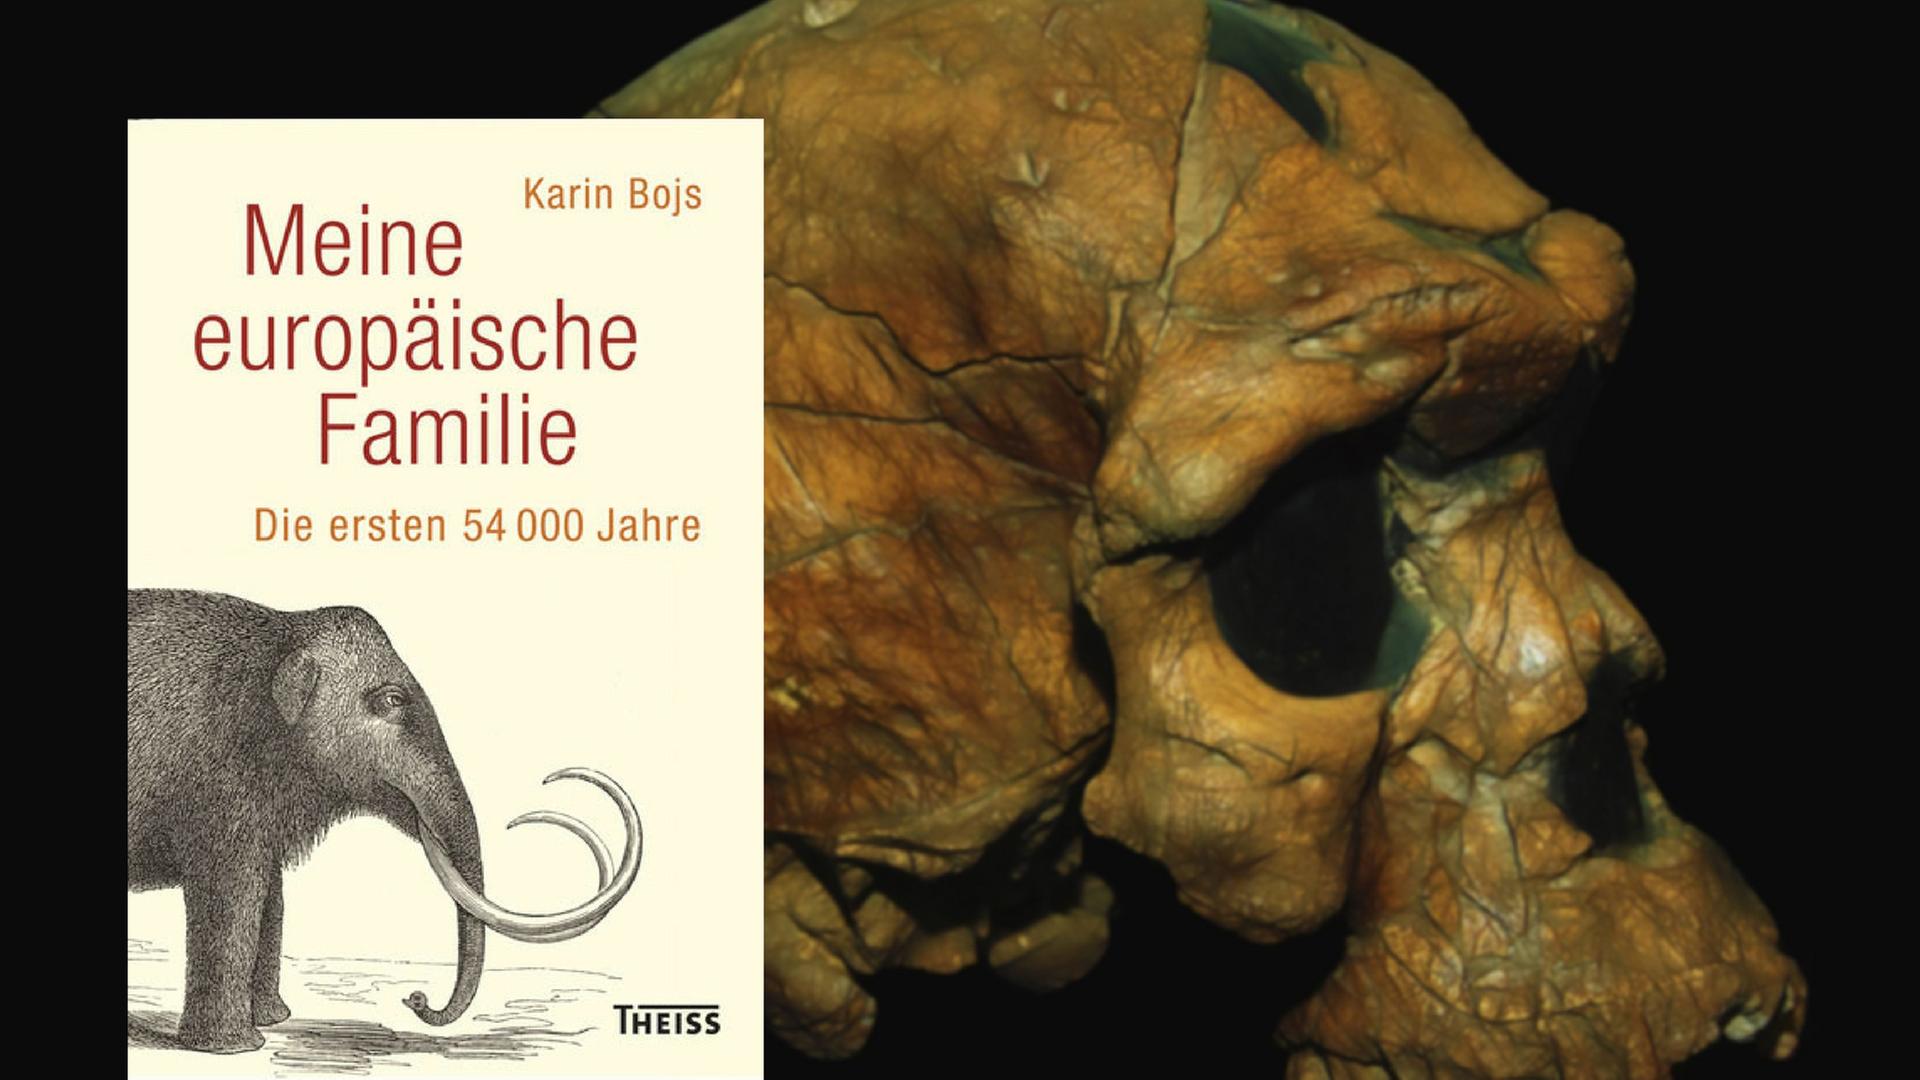 Der älteste bakannte Schädel eines Homo Sapiens - Äthiopisches Nationalmuseum, Addis Abeba